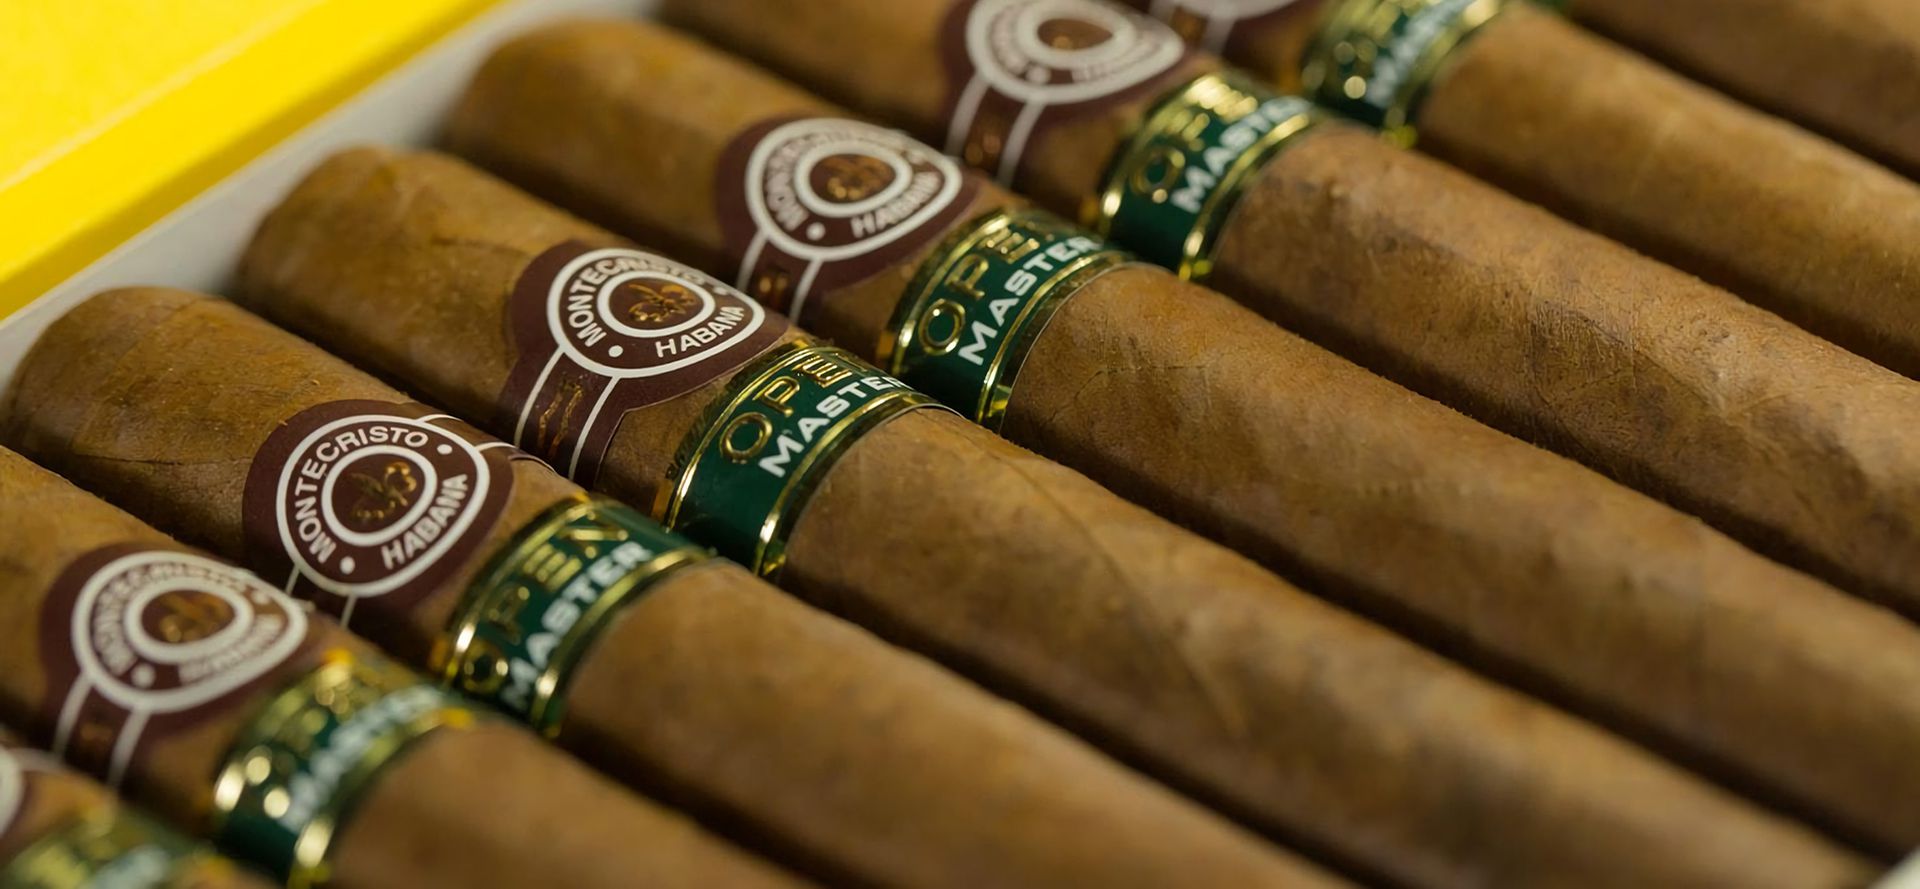 Montecristo Habana Cheap Cigars.